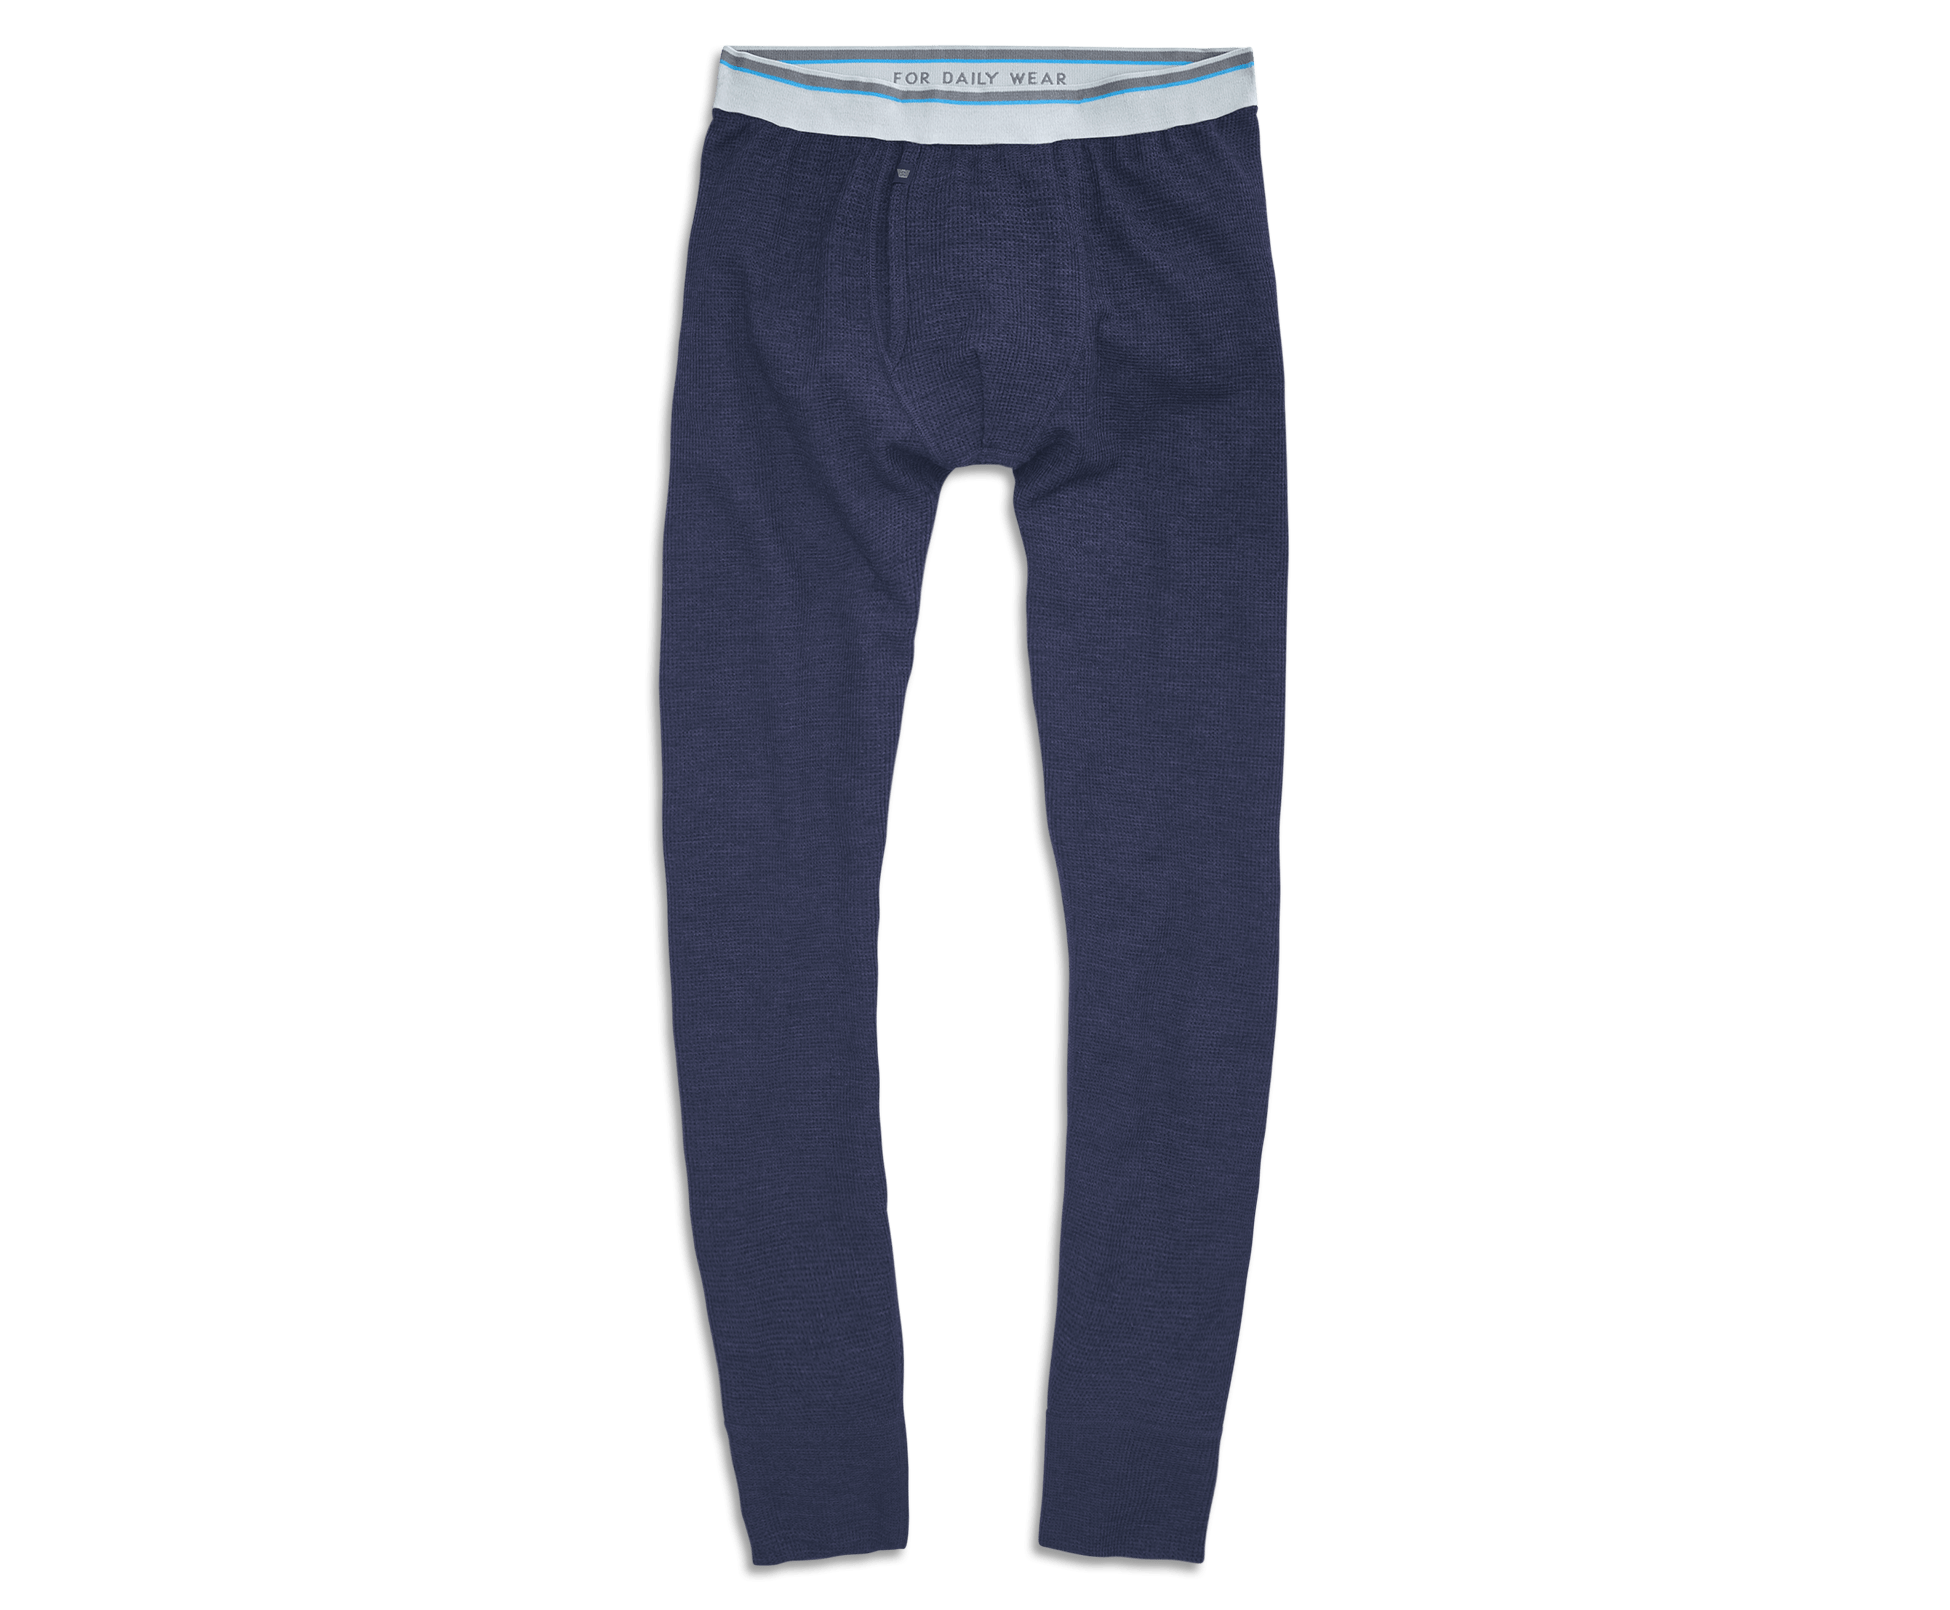 Thermal-Knit Long-John Underwear